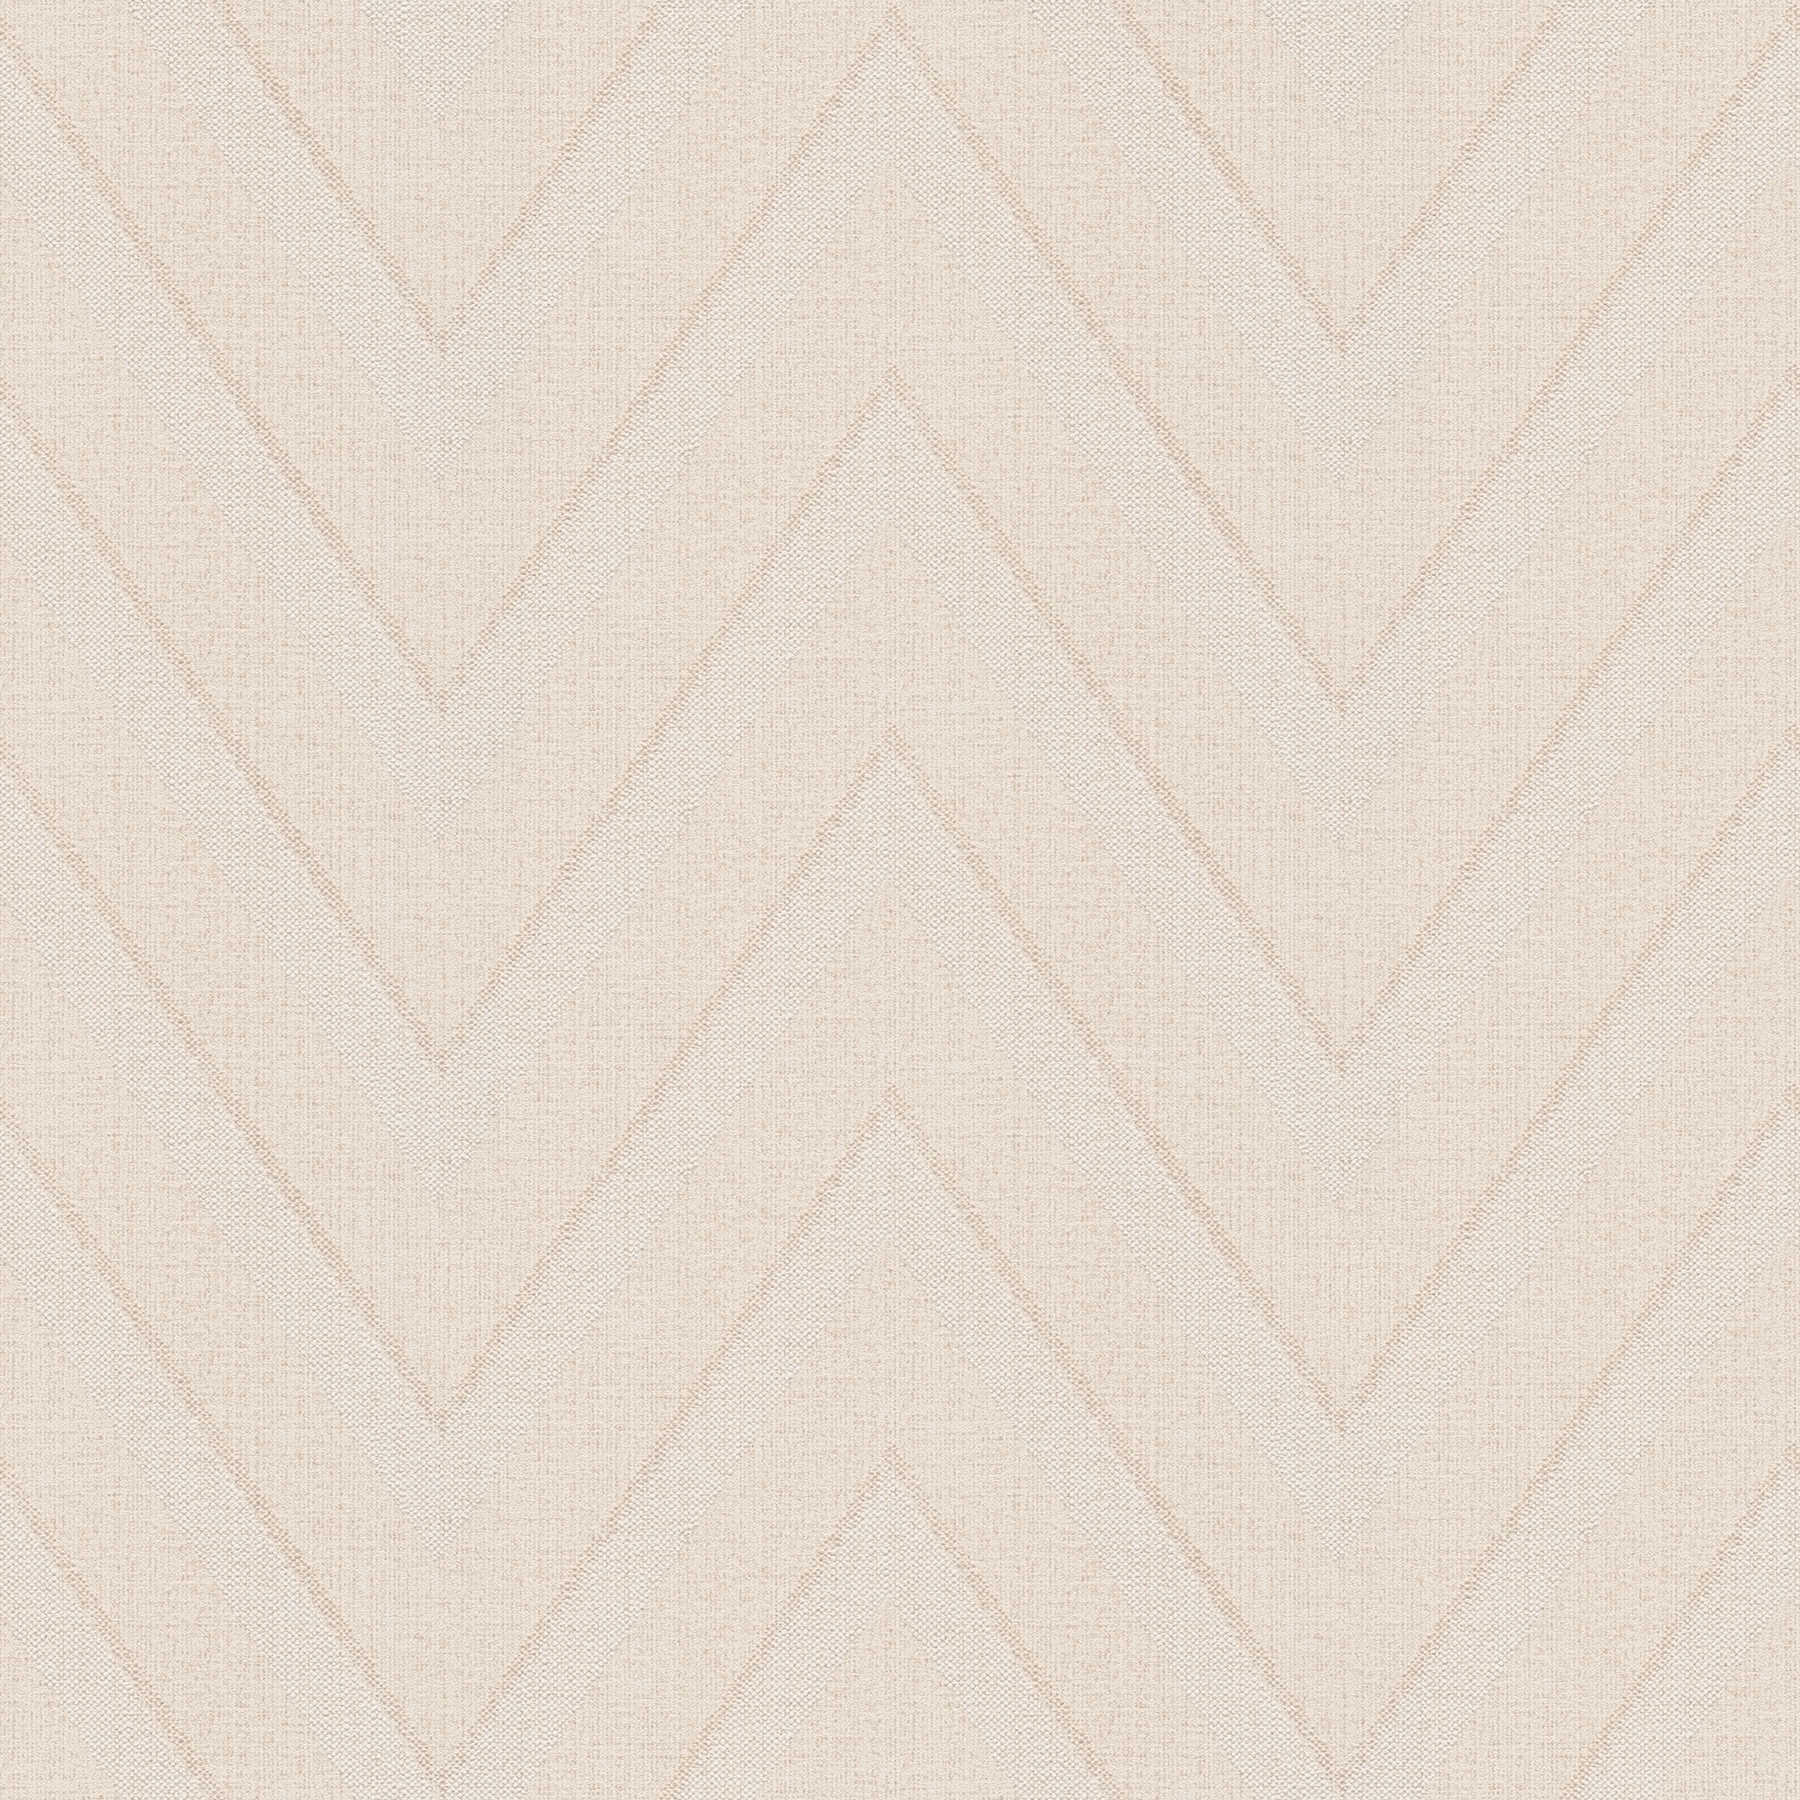         Wallpaper zigzag pattern & linen look - beige, brown
    